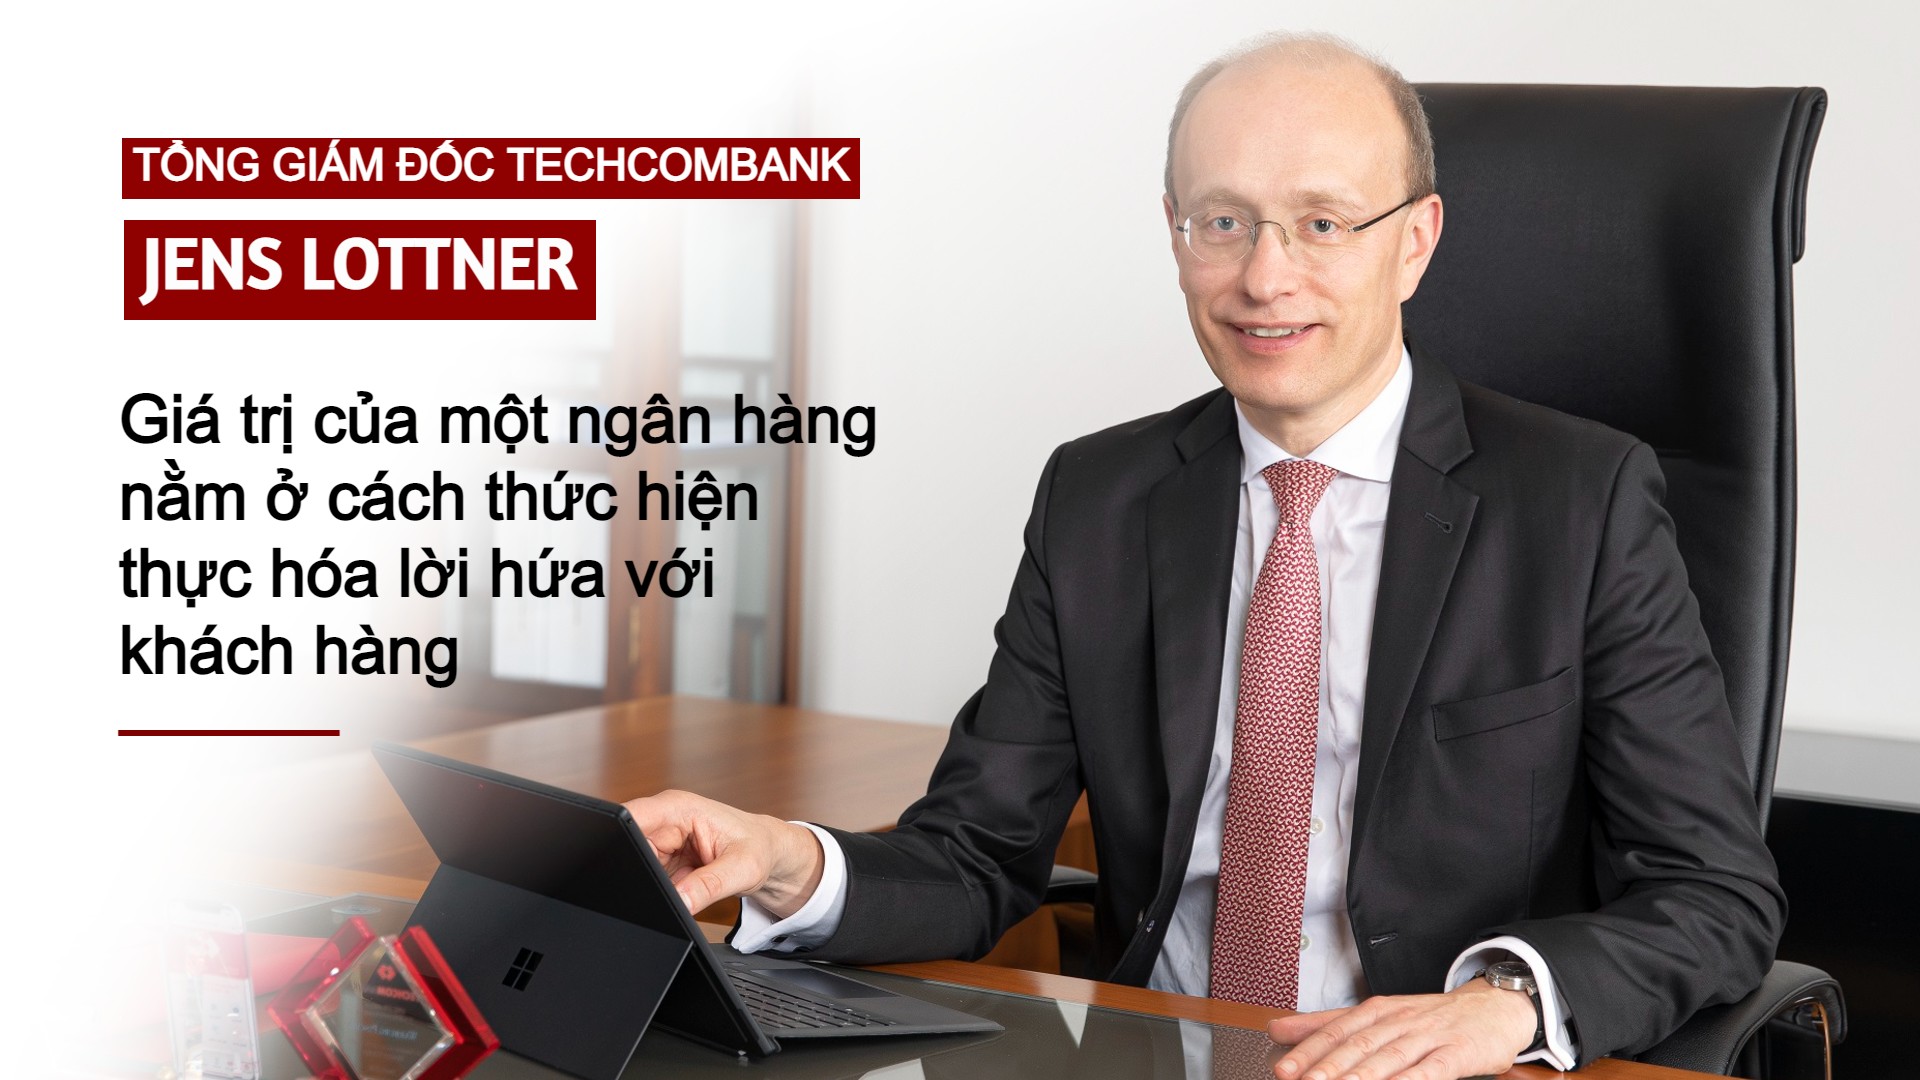 Tổng giám đốc Techcombank Jens Lottner: Giá trị của một ngân hàng nằm ở cách thức hiện thực hóa lời hứa với khách hàng